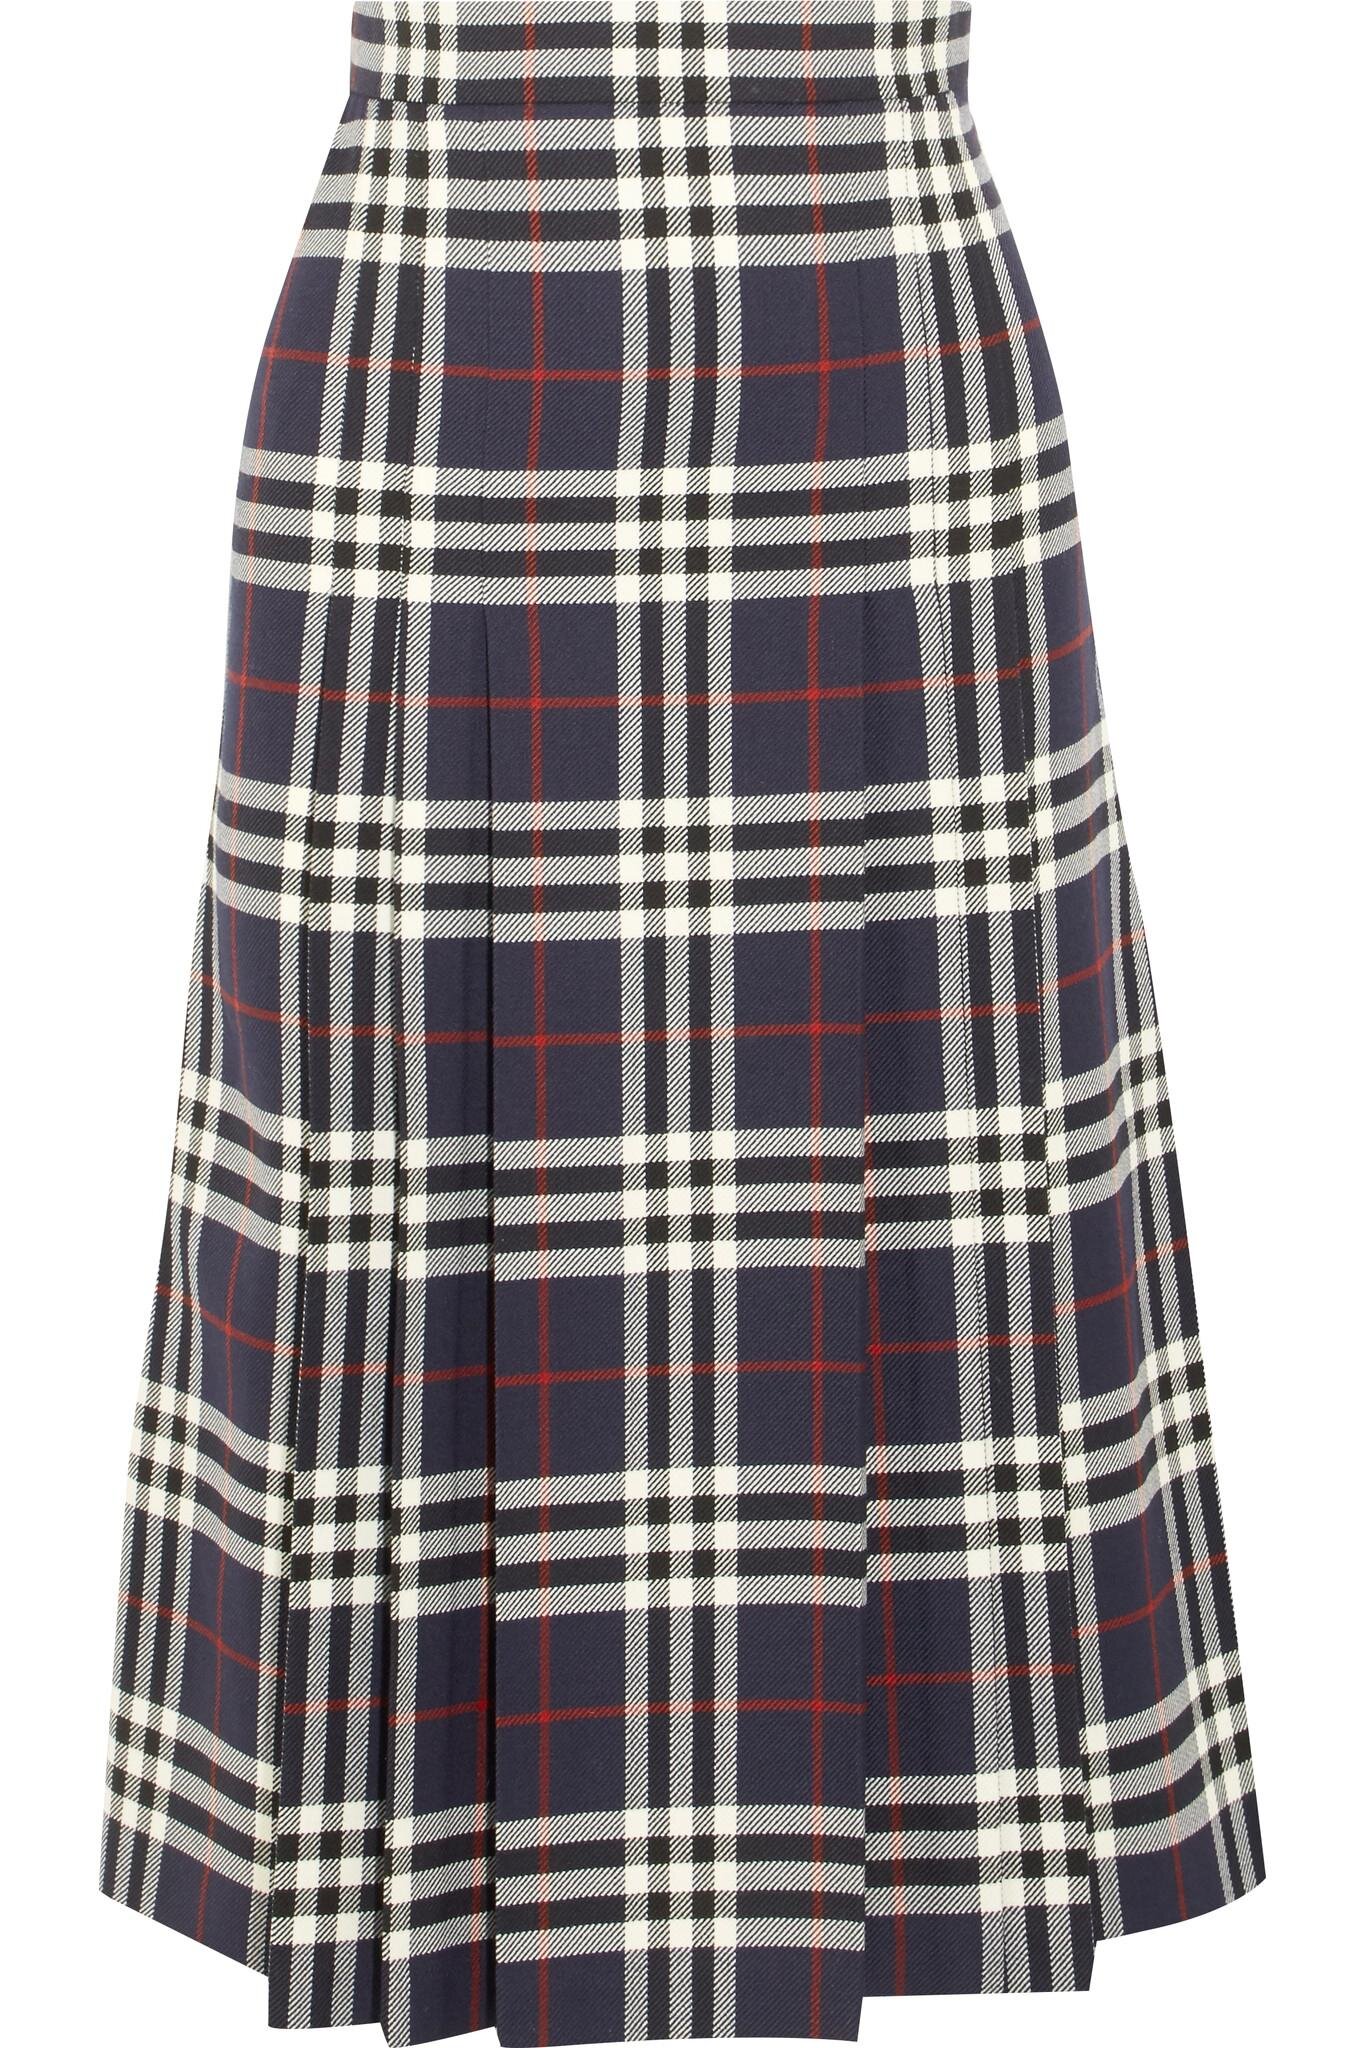 Skirt Long Woolen Casual Plaid | Long Skirt Plaid Autumn Winter - Irregular  Plaid - Aliexpress